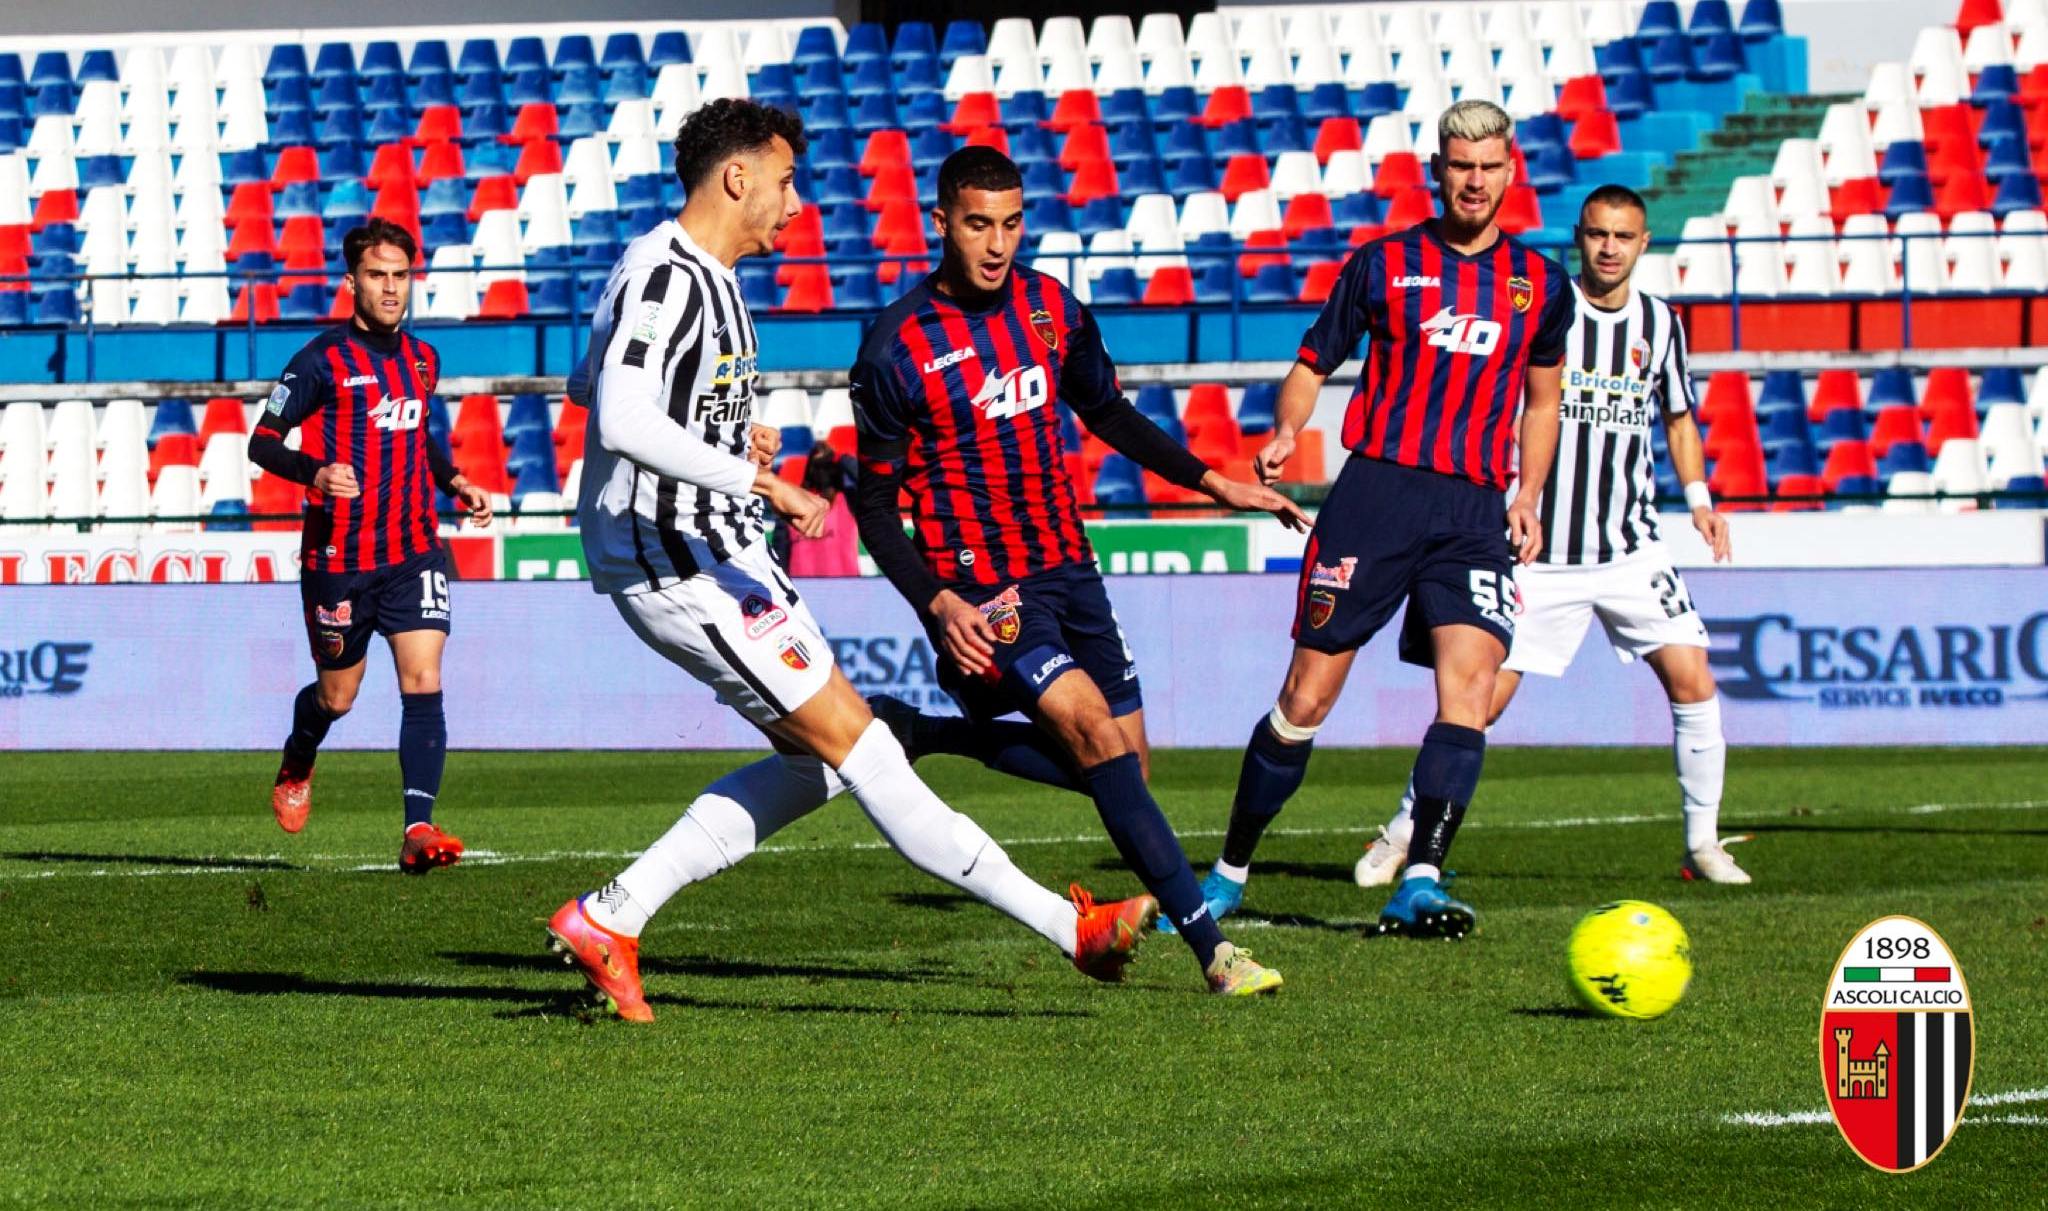 L’Ascoli torna in zona playoff: risultati e classifica della serie B